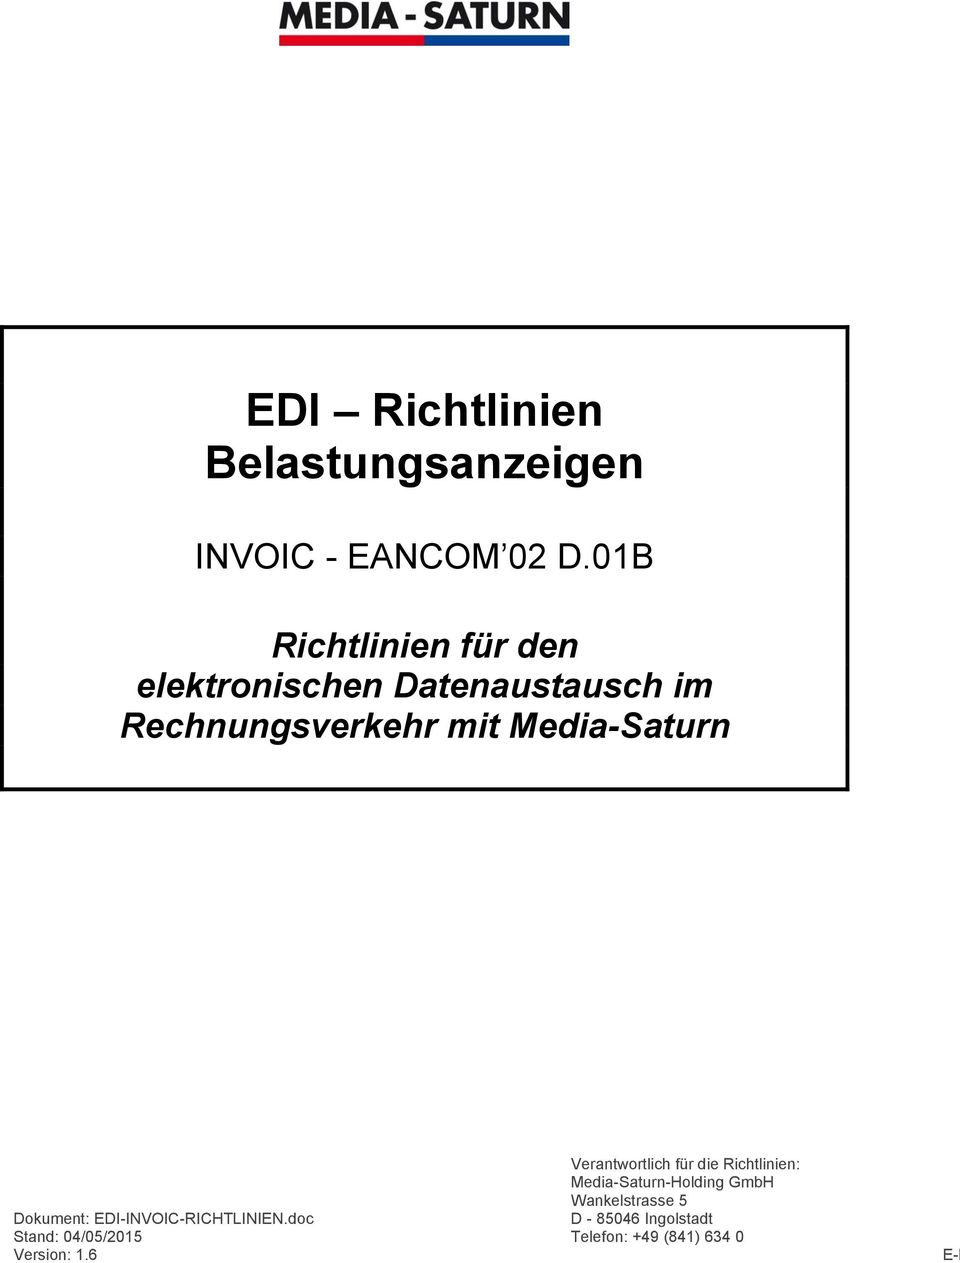 Media-Saturn Verantwortlich für die Richtlinien: Media-Saturn-Holding GmbH